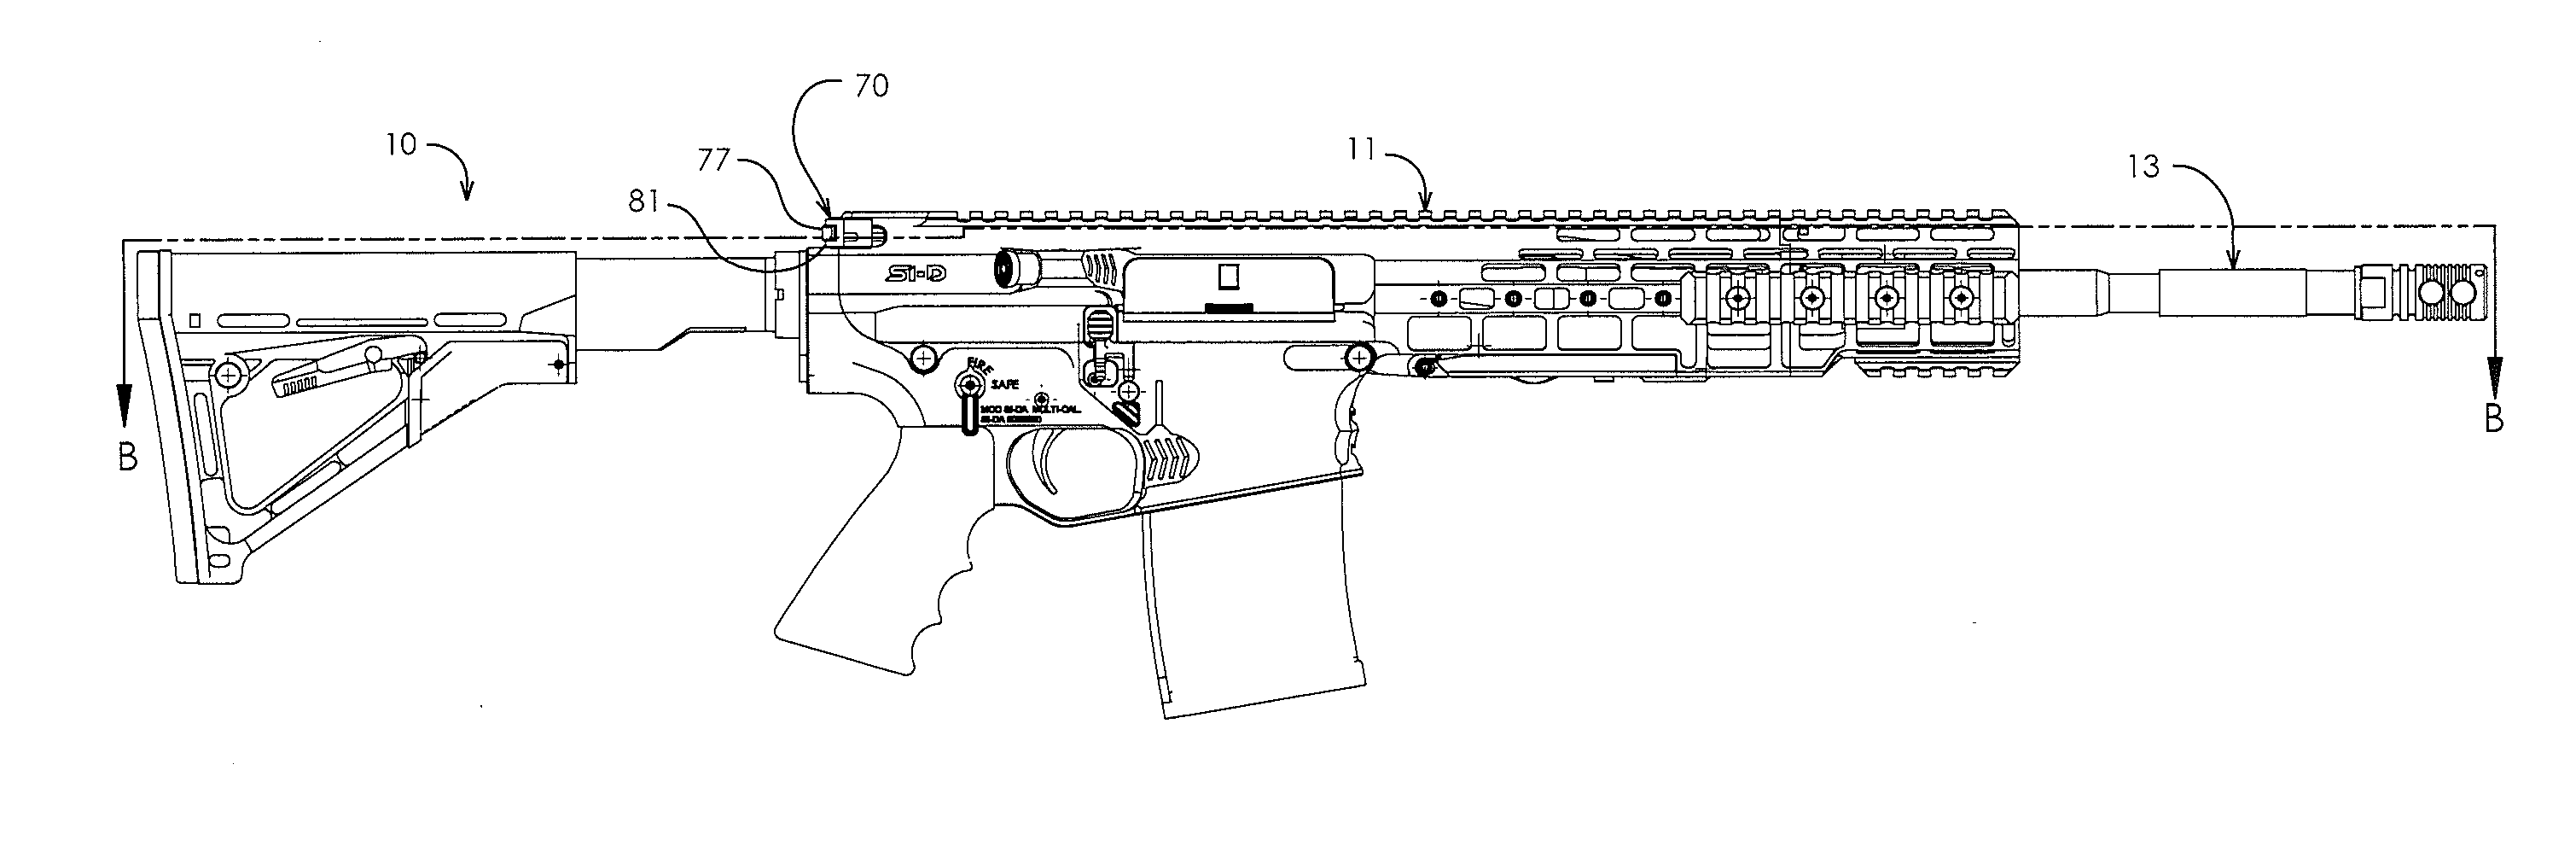 Internal latch in charging handle of firearm